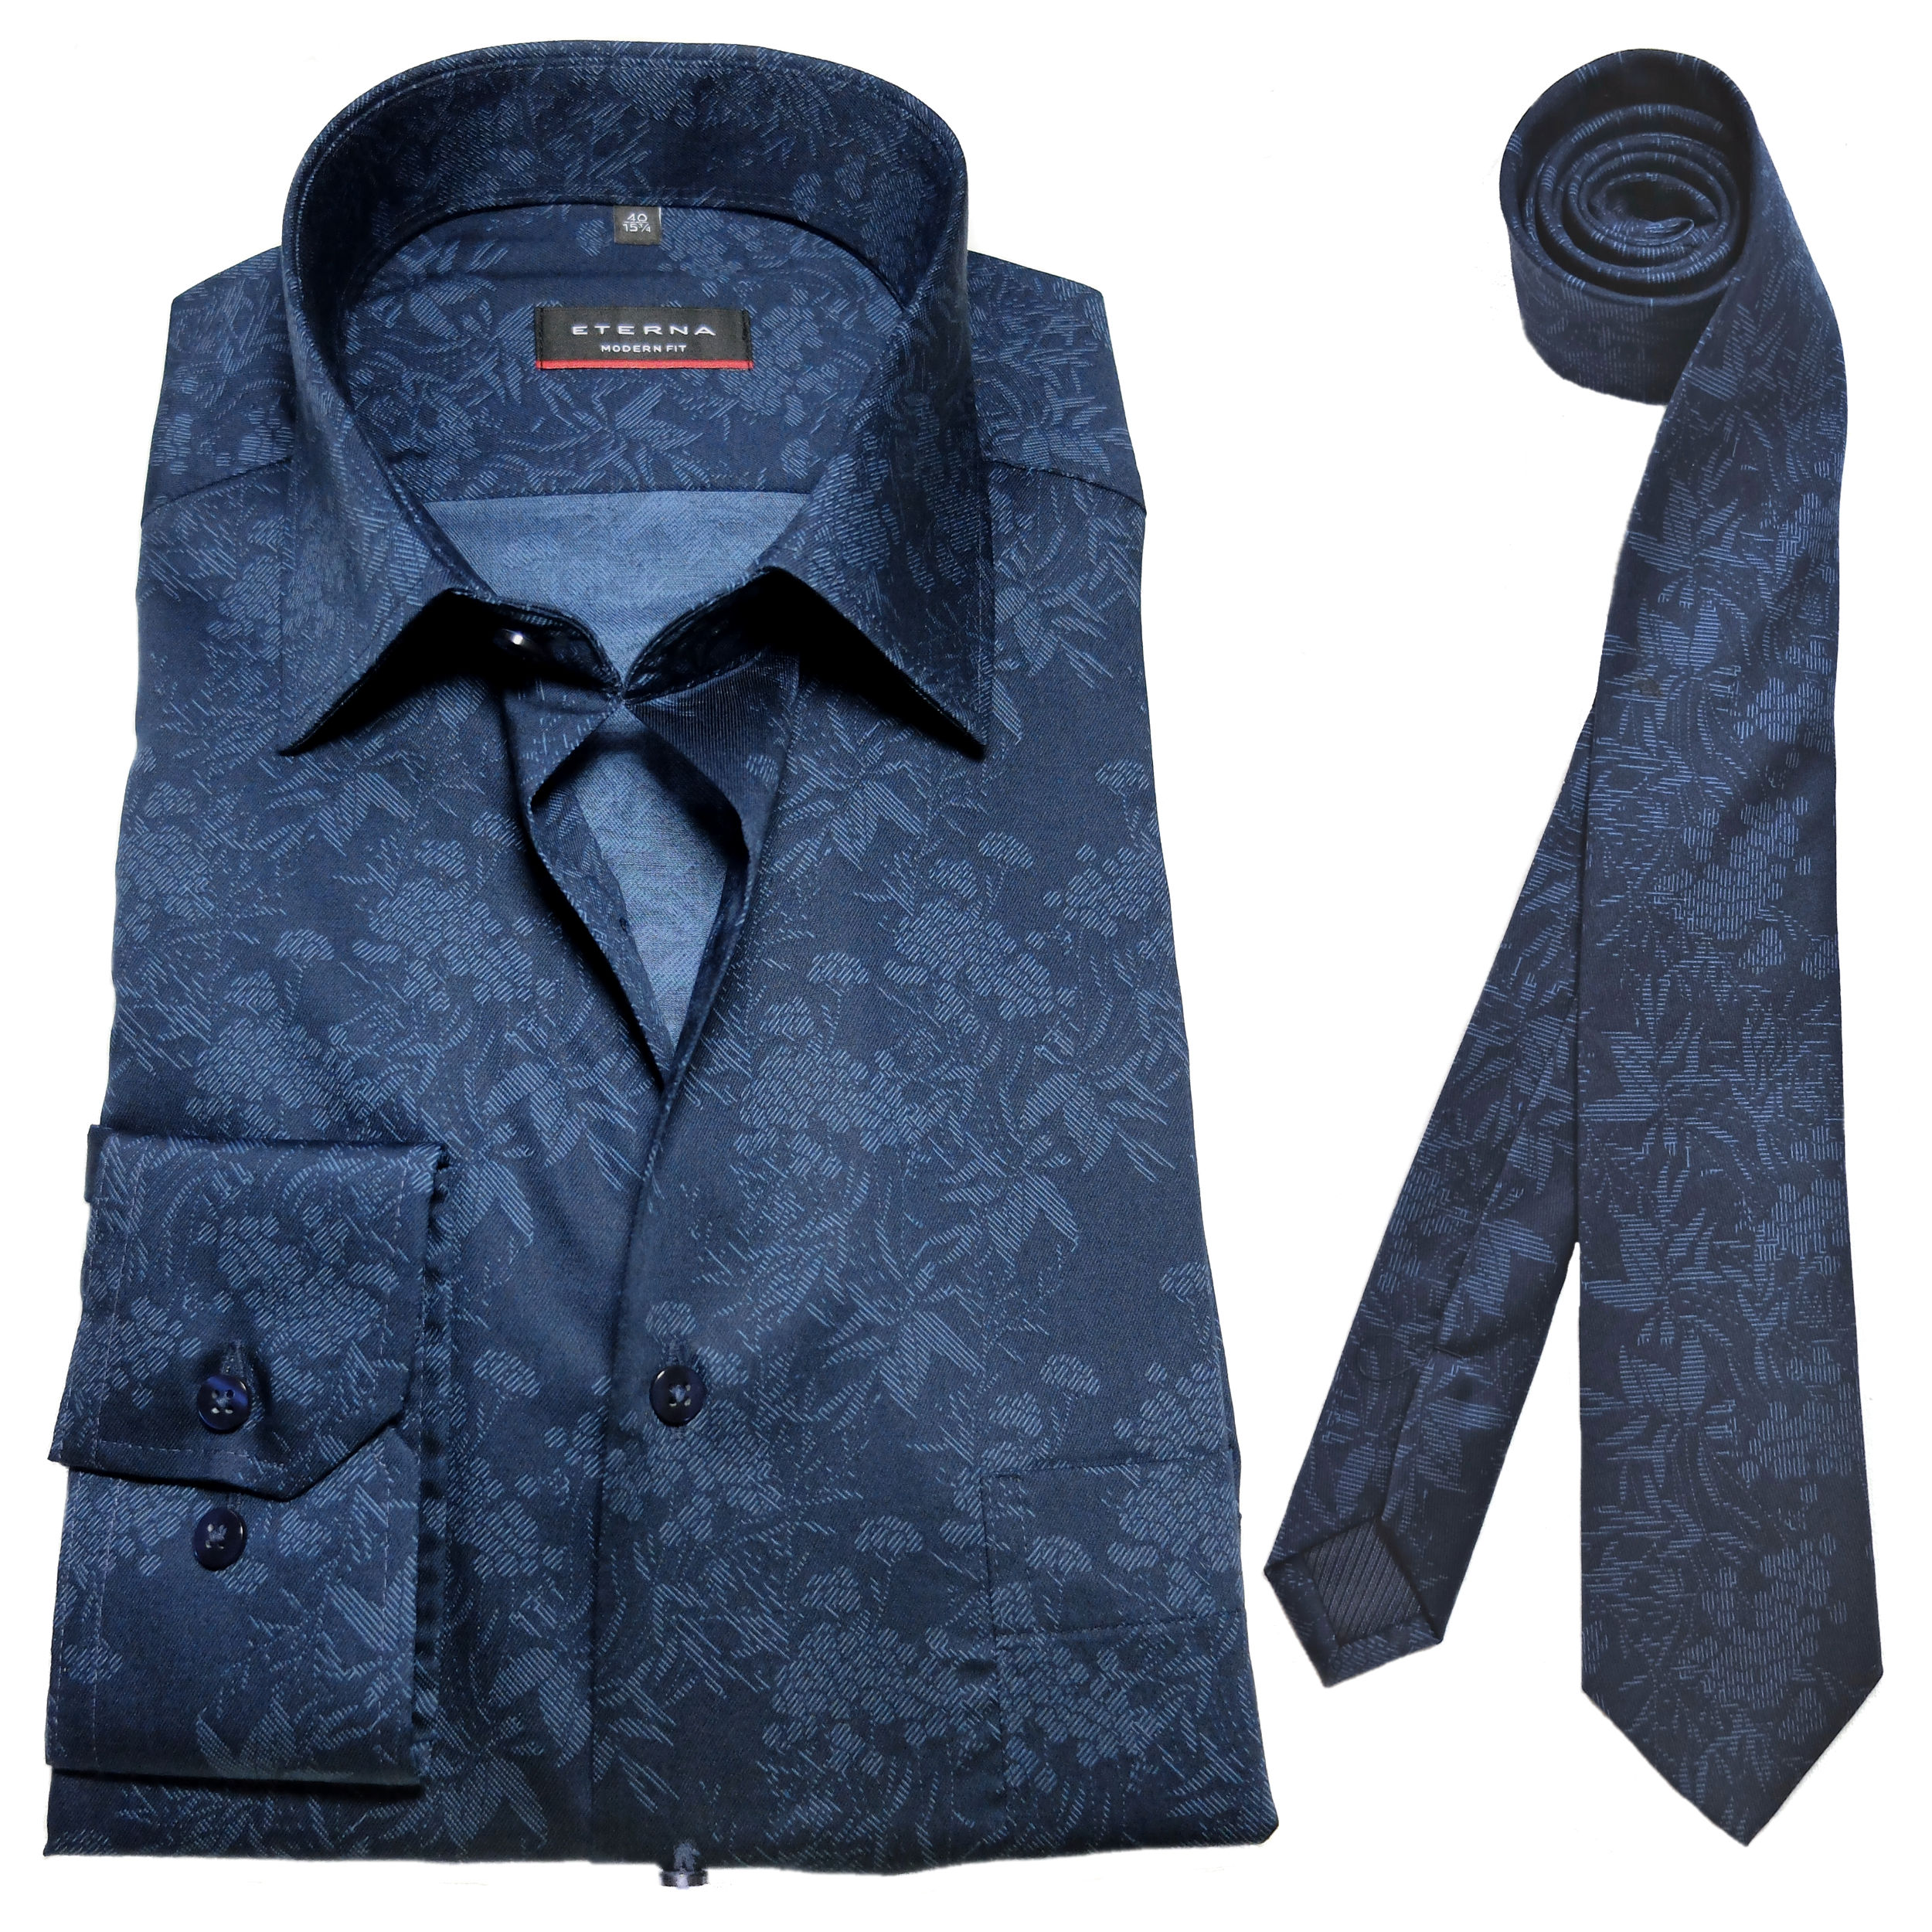 Krawatte eterna Fit Langarmhemd Marken zu Herrenmode + dunkelblau fairen Floralmotiv blau Hochwertige - Modern führender